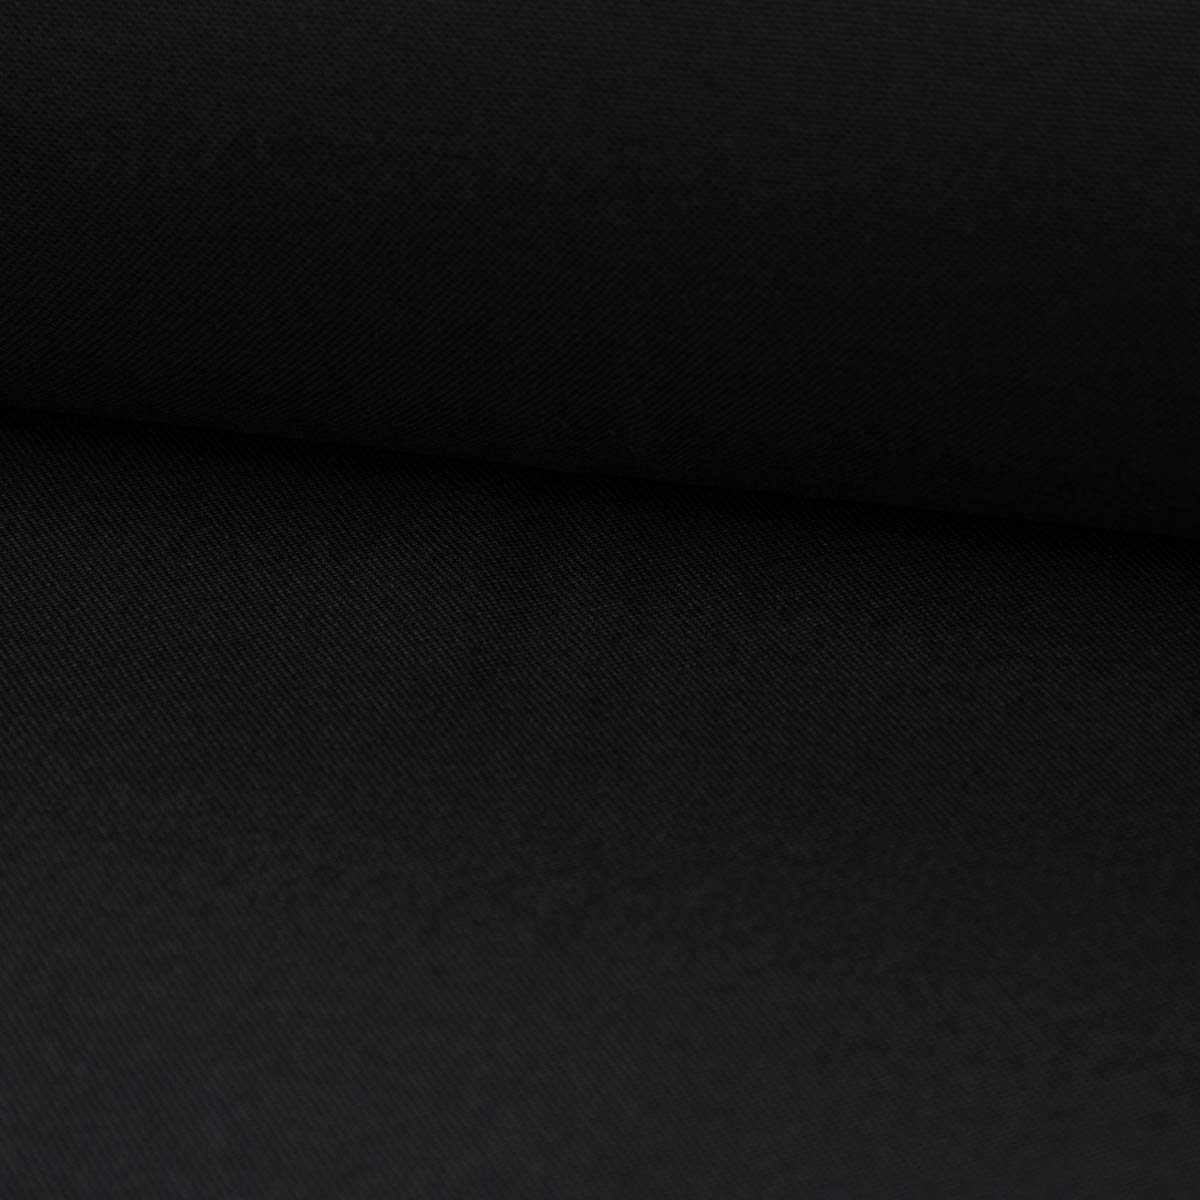 SCHÖNER LEBEN. Stoff Baumwollstoff Dekostoff Canvas einfarbig schwarz 1,4m Breite, allergikergeeignet